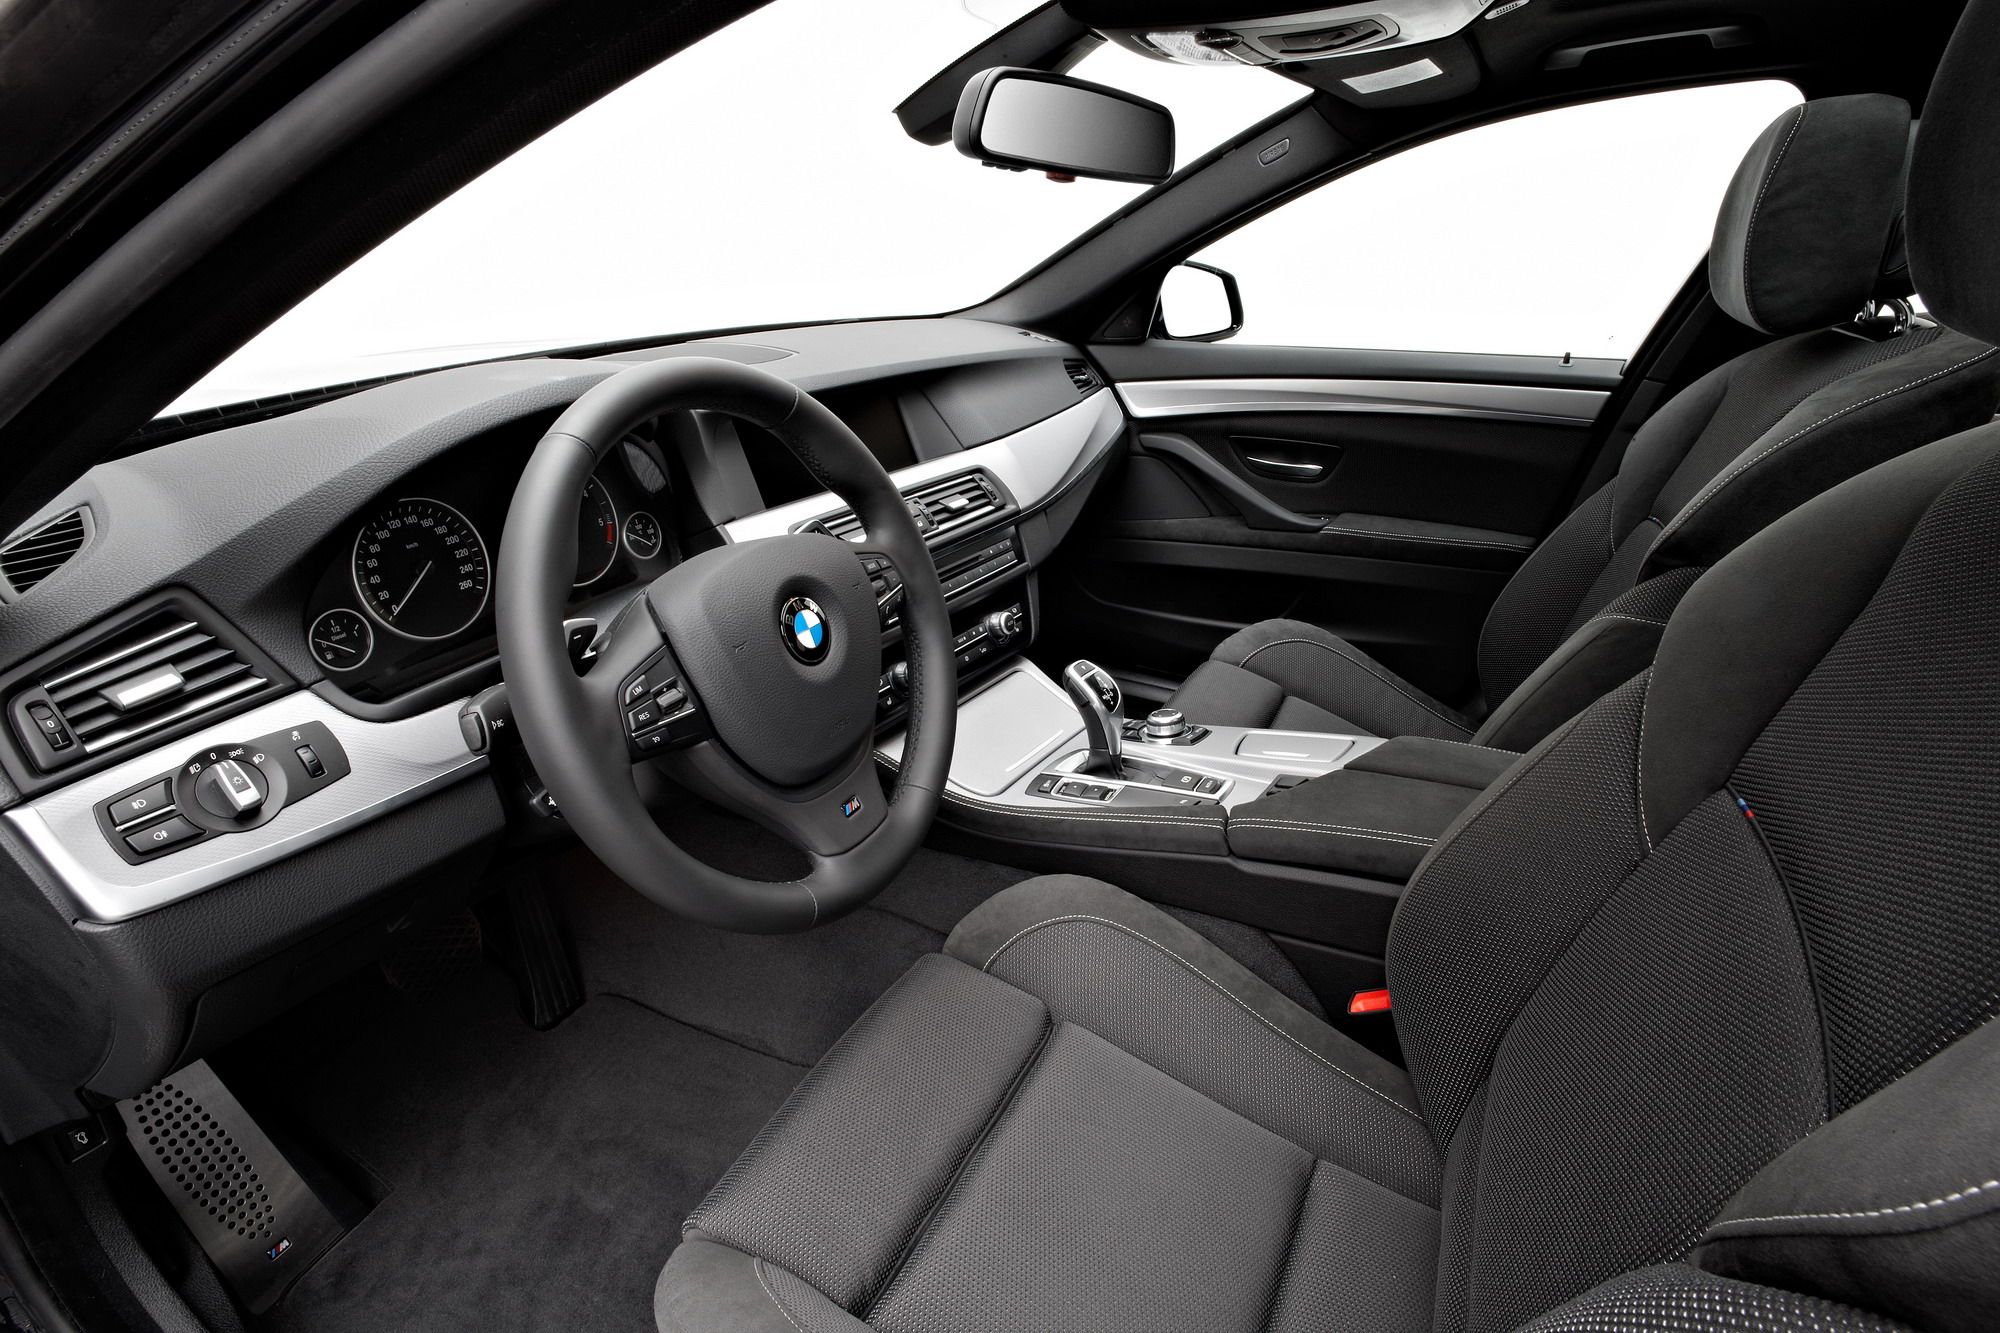 2011 BMW 5-Series sedan M-Sport package